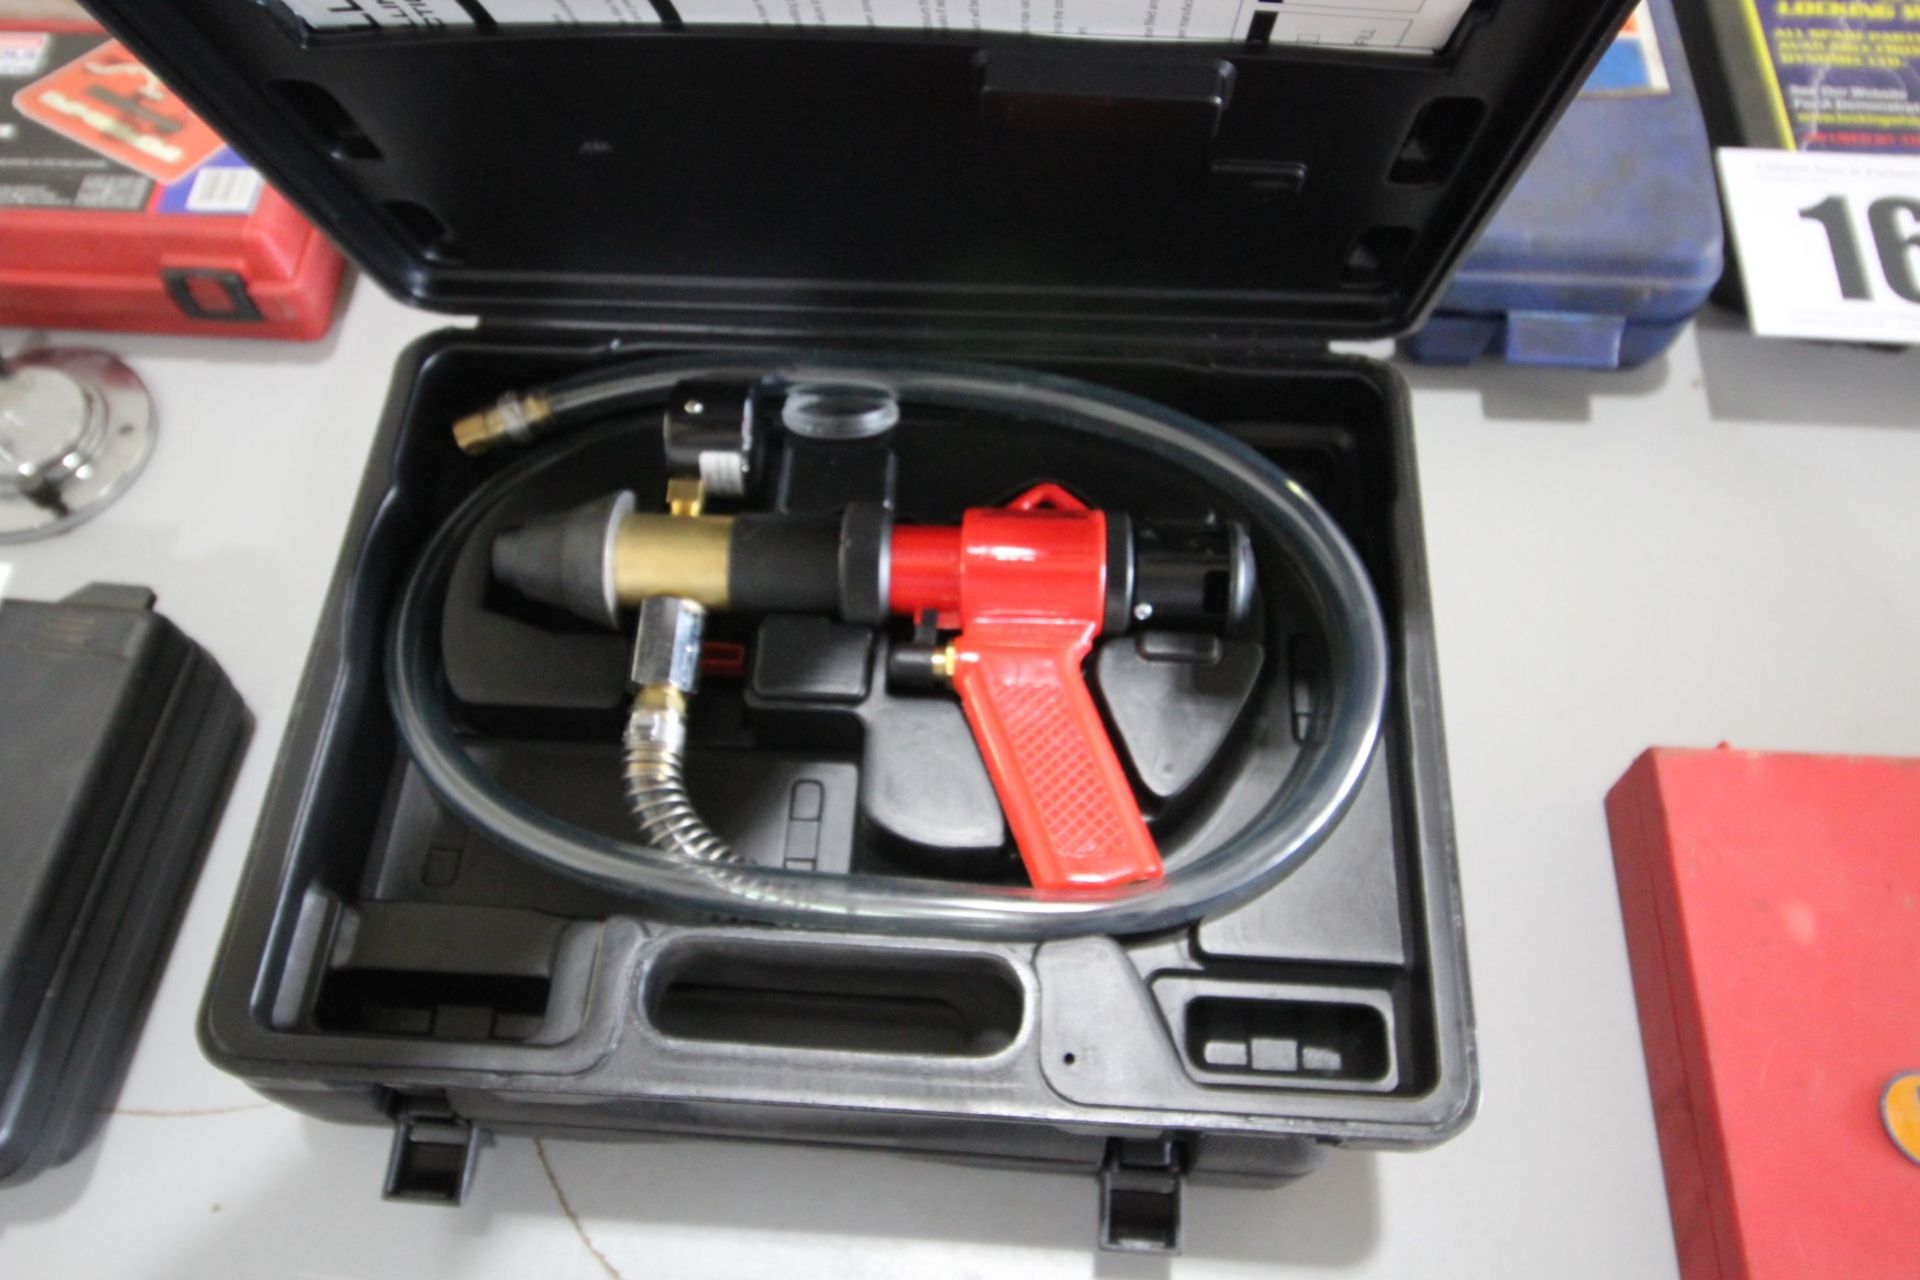 VORTEX HIGH PRESSURE WATER DETERGENT GUN IN BOX & SEALY FAST FILL COOLING SYSTEM GUN